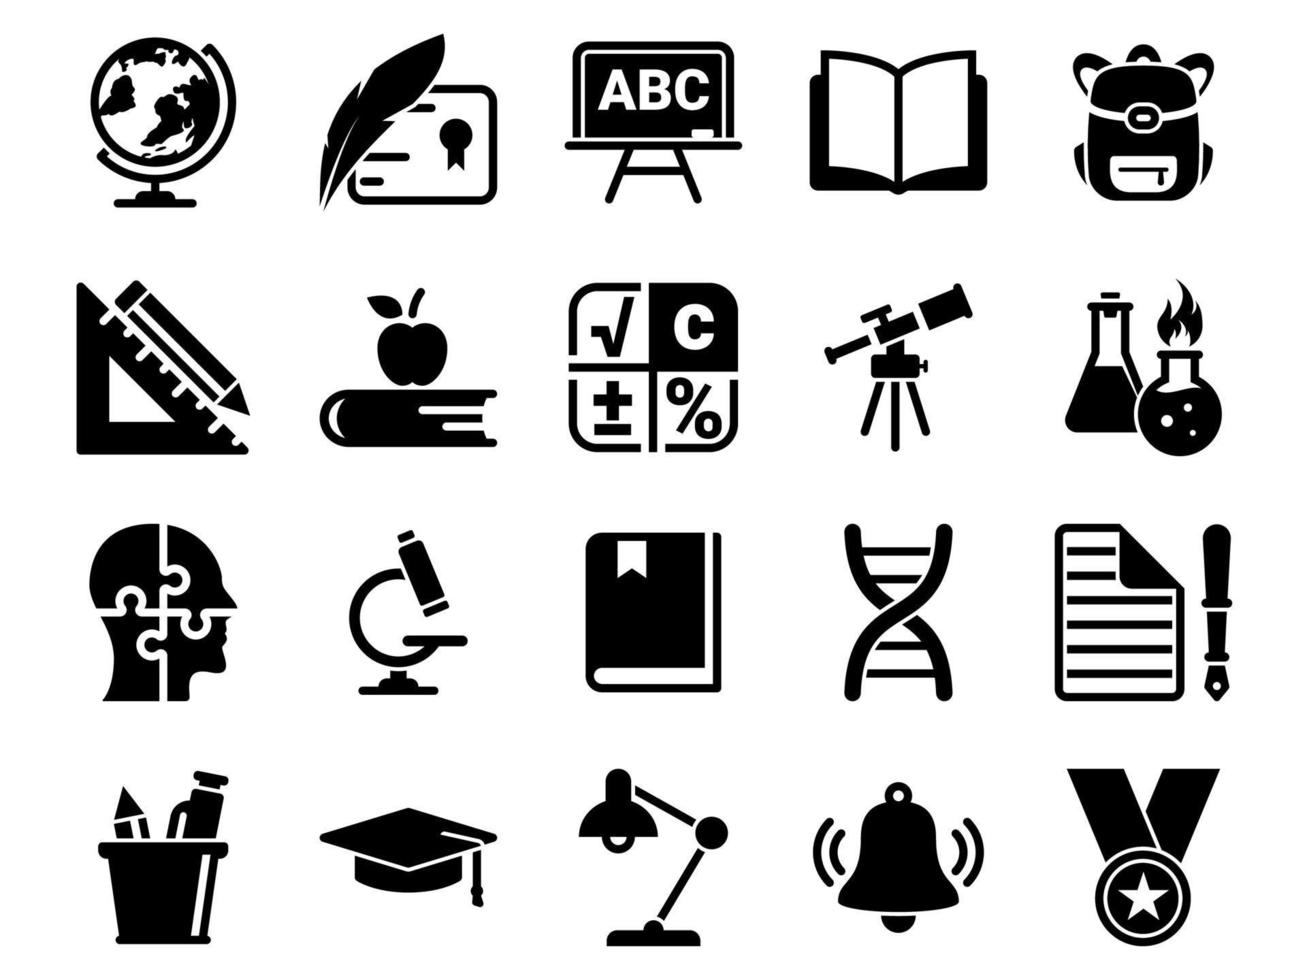 conjunto de iconos simples en una escuela temática, educación, educación, vector, diseño, colección, plano, signo, símbolo, elemento, objeto, ilustración. iconos negros aislados sobre fondo blanco vector